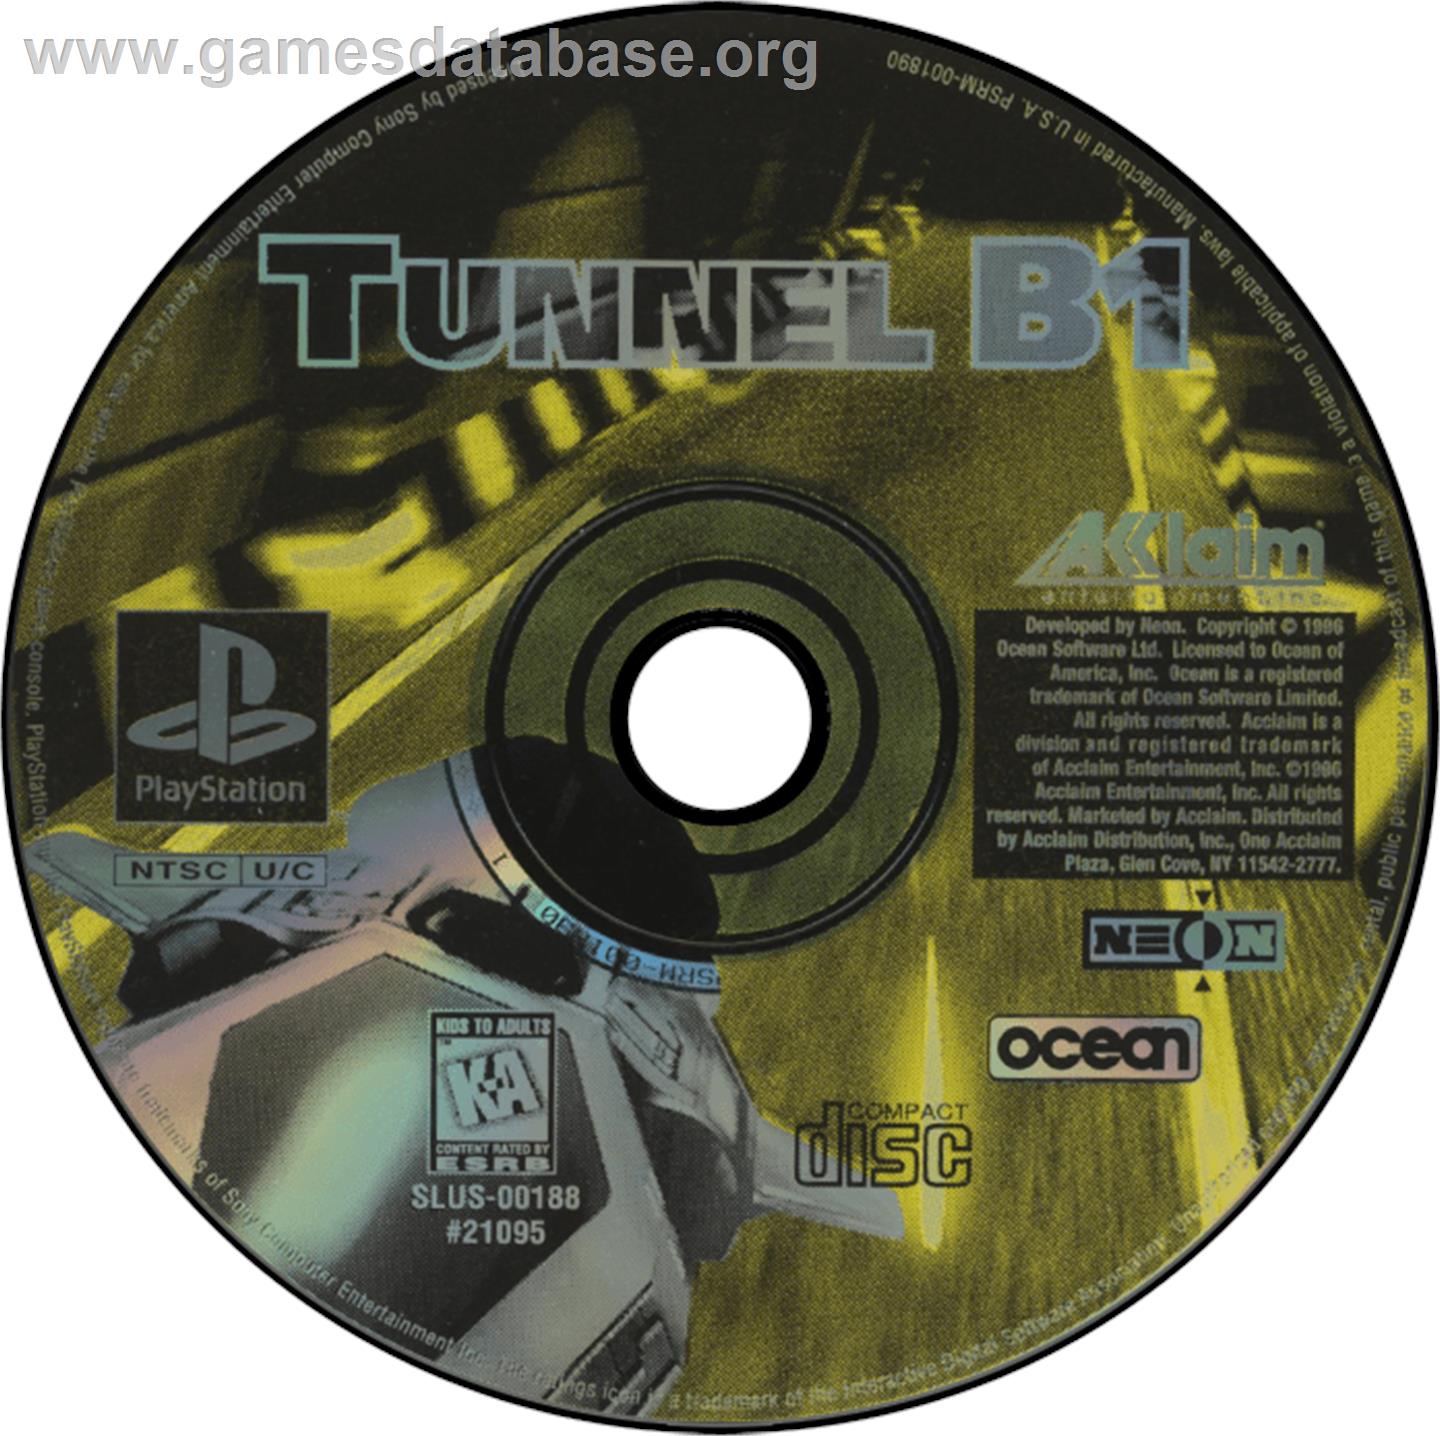 Tunnel B1 - Sony Playstation - Artwork - Disc